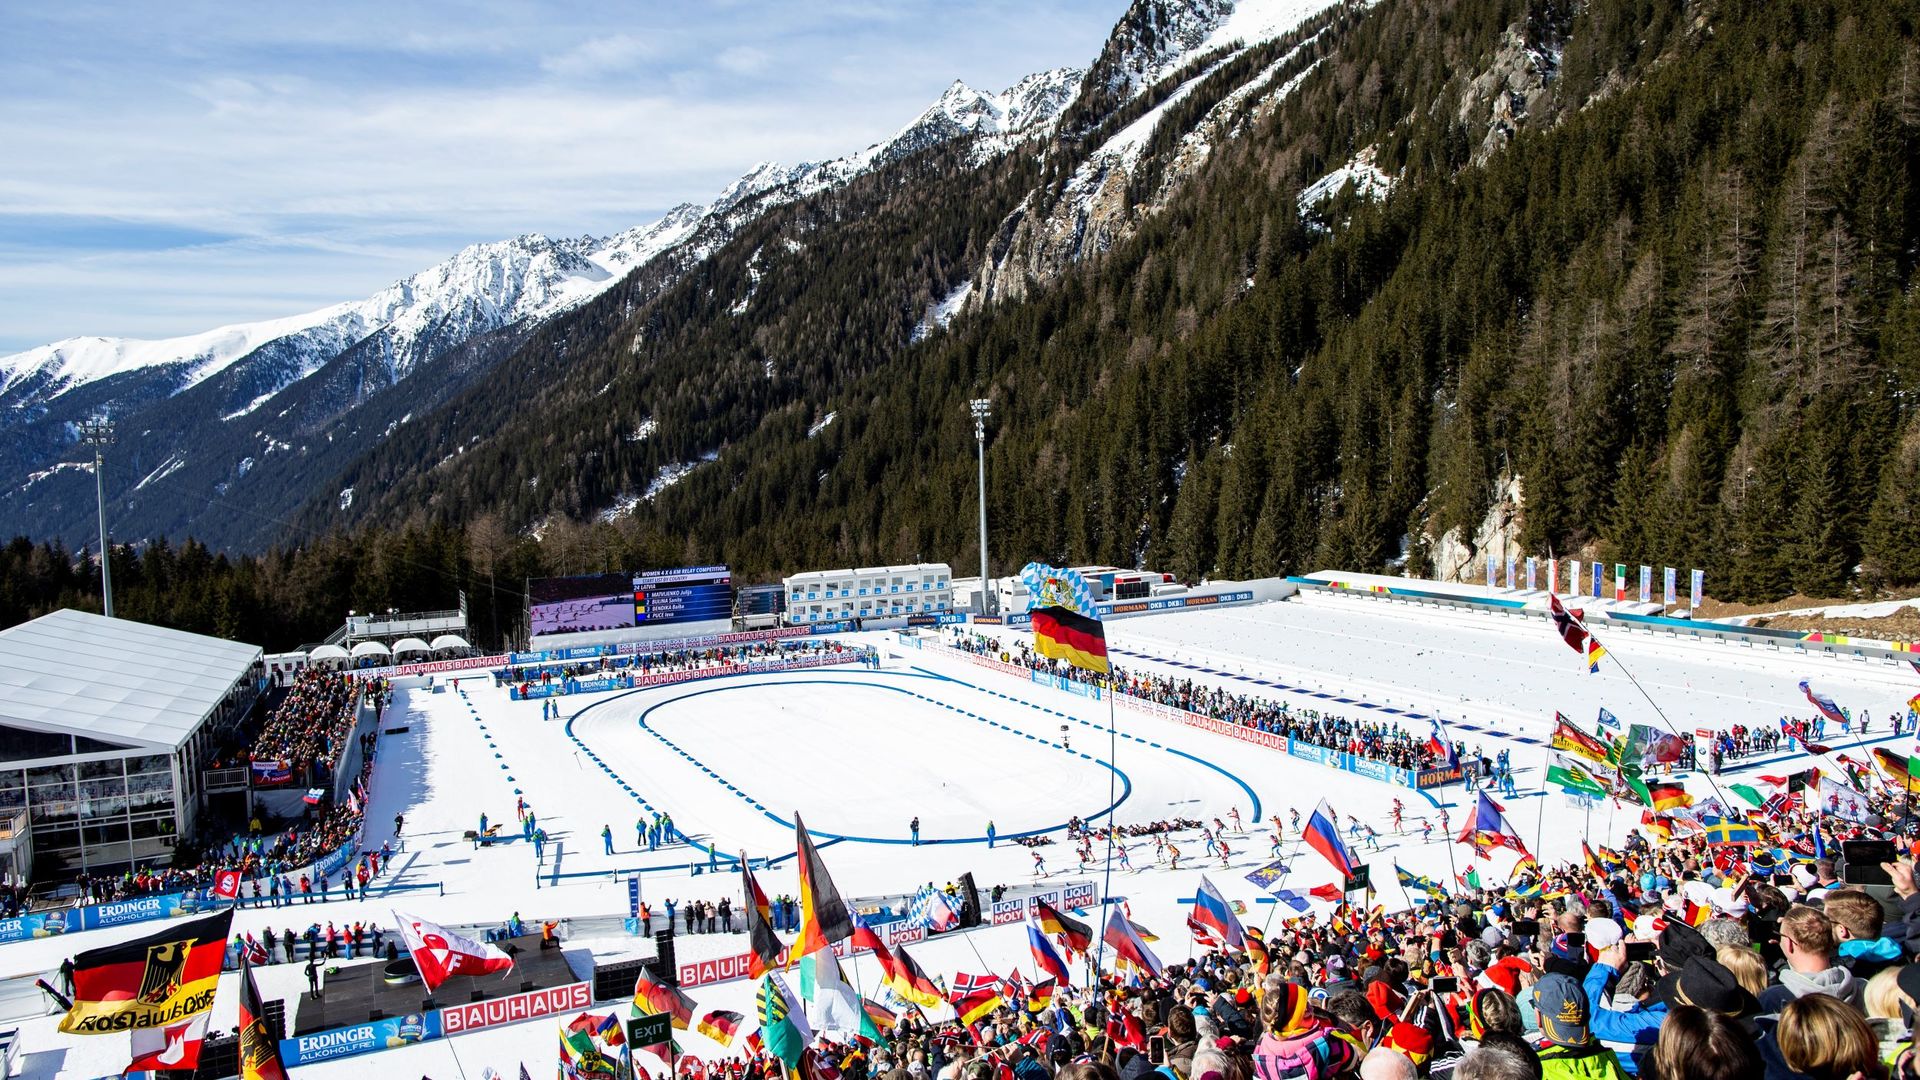 05.10.2020 - Nel gennaio 2021 la Coppa del mondo di biathlon torna ad Anterselva